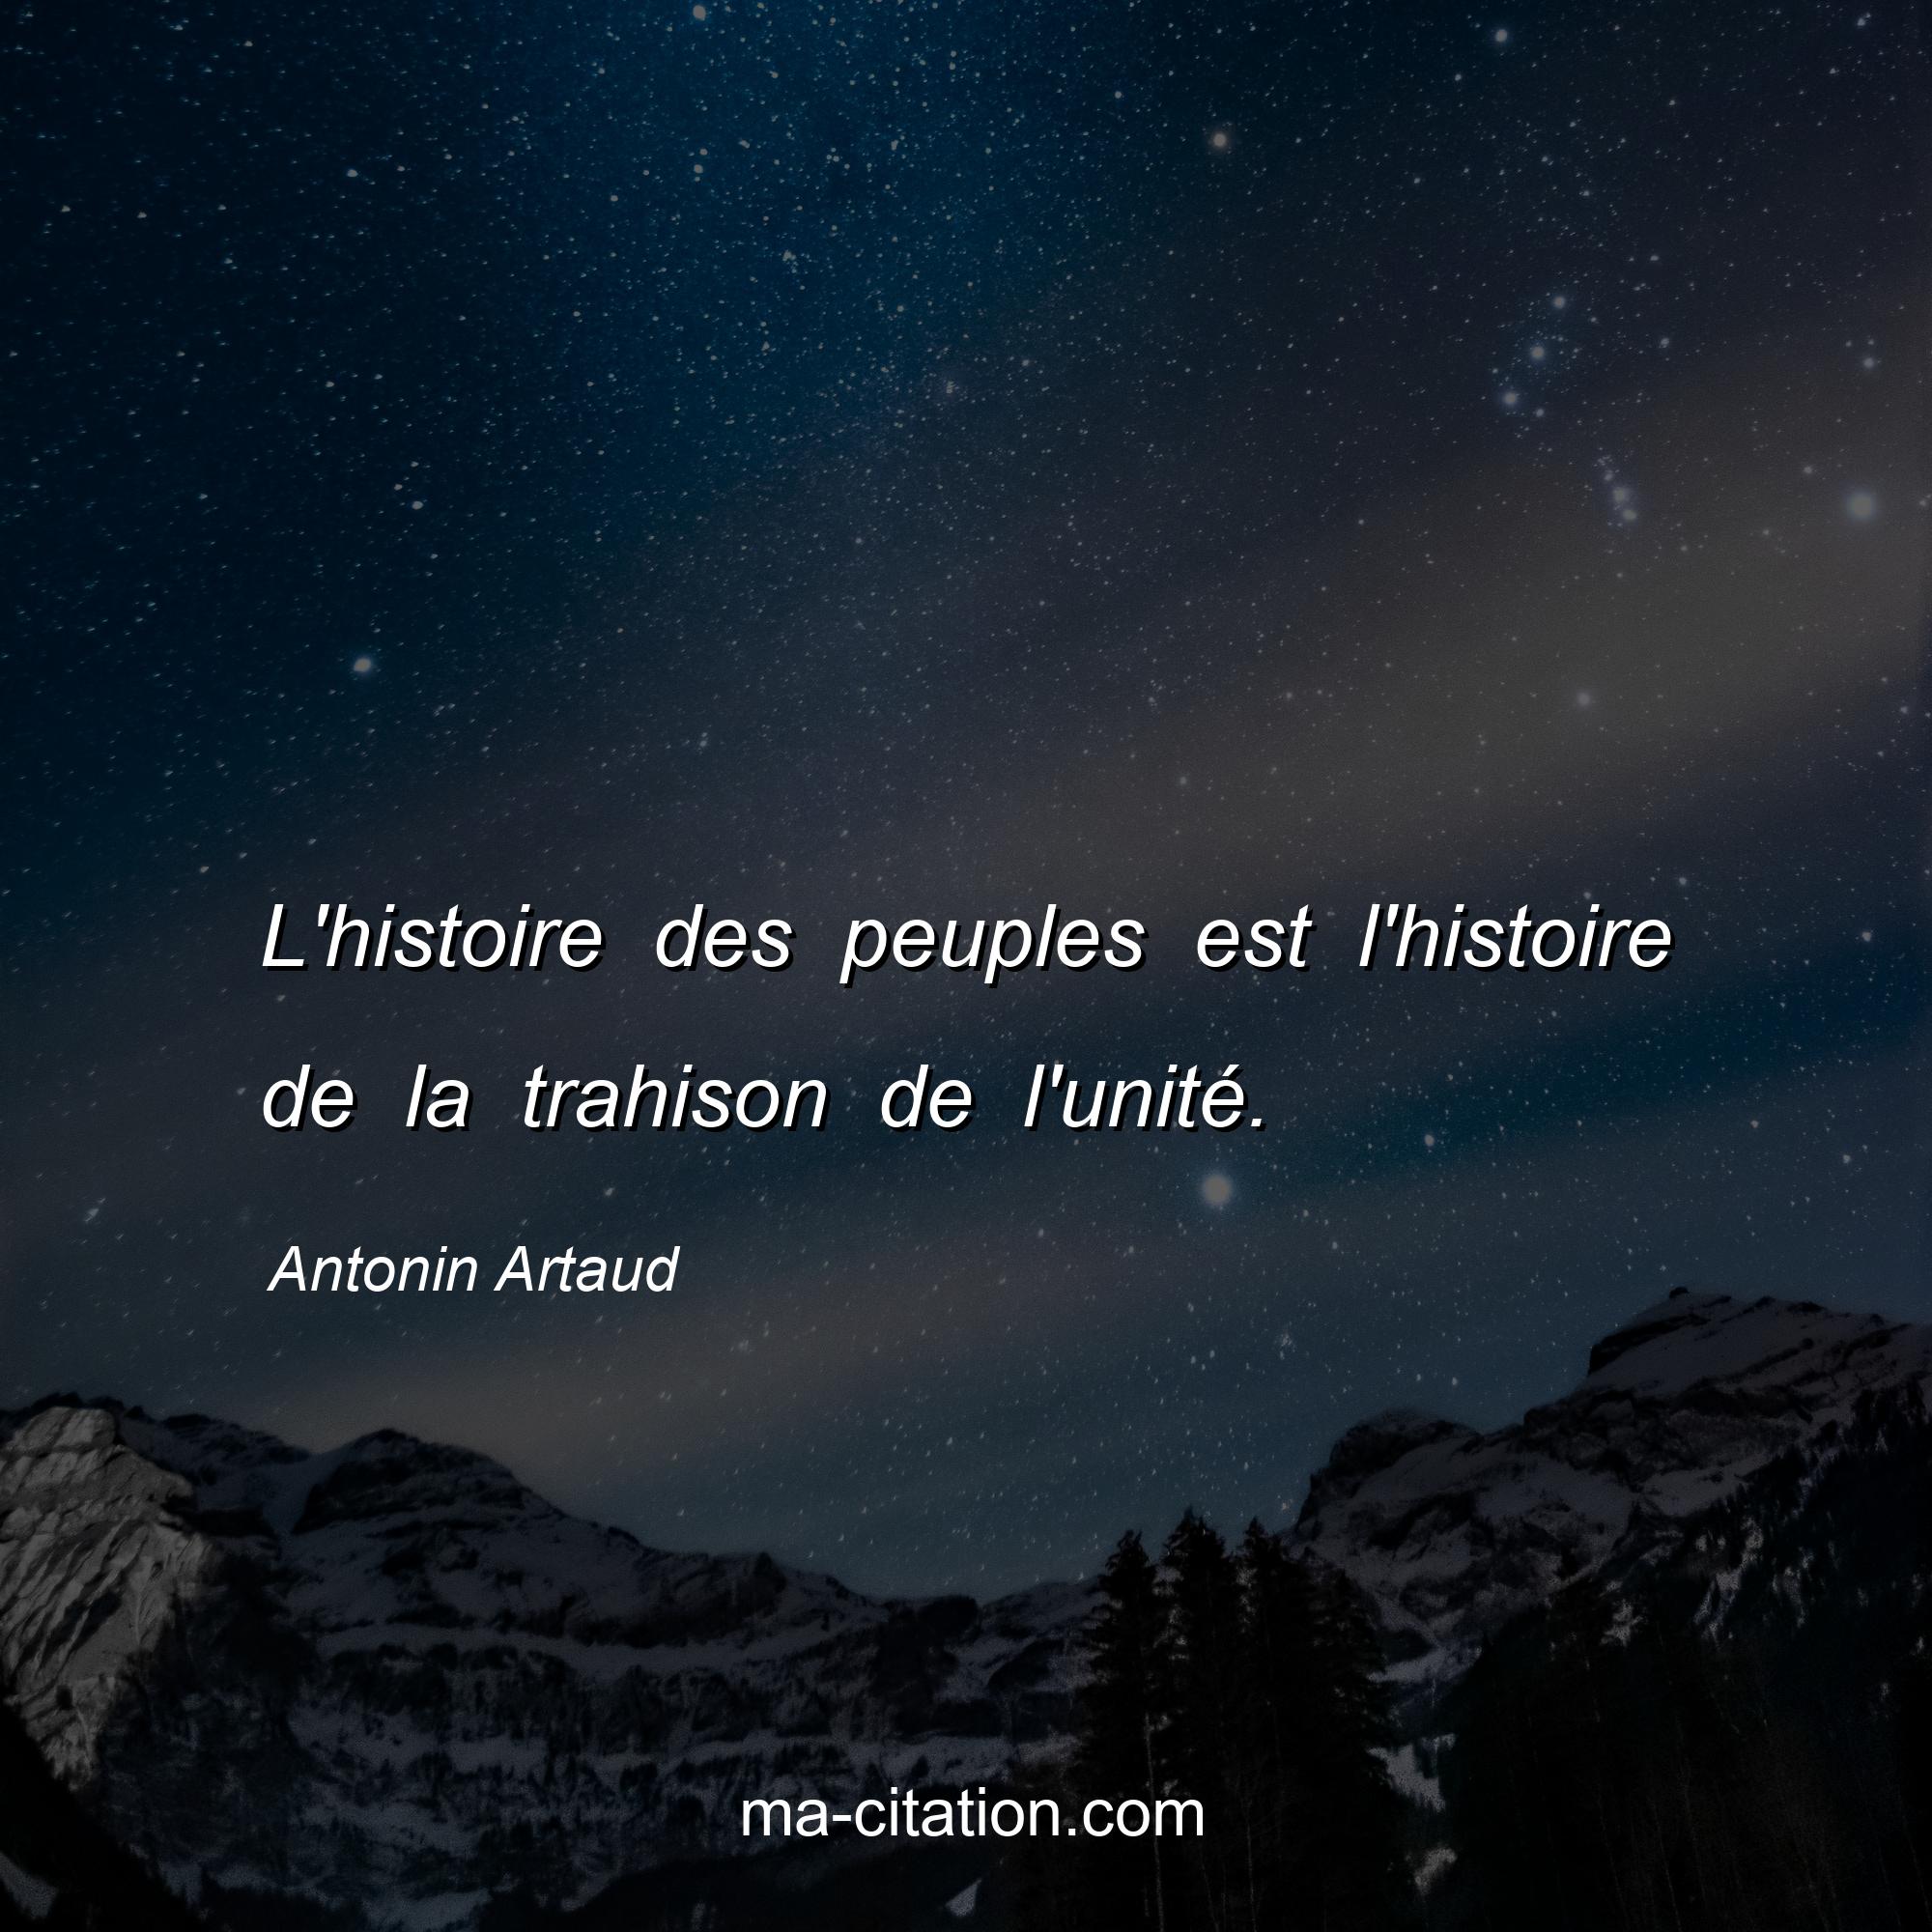 Antonin Artaud : L'histoire des peuples est l'histoire de la trahison de l'unité.